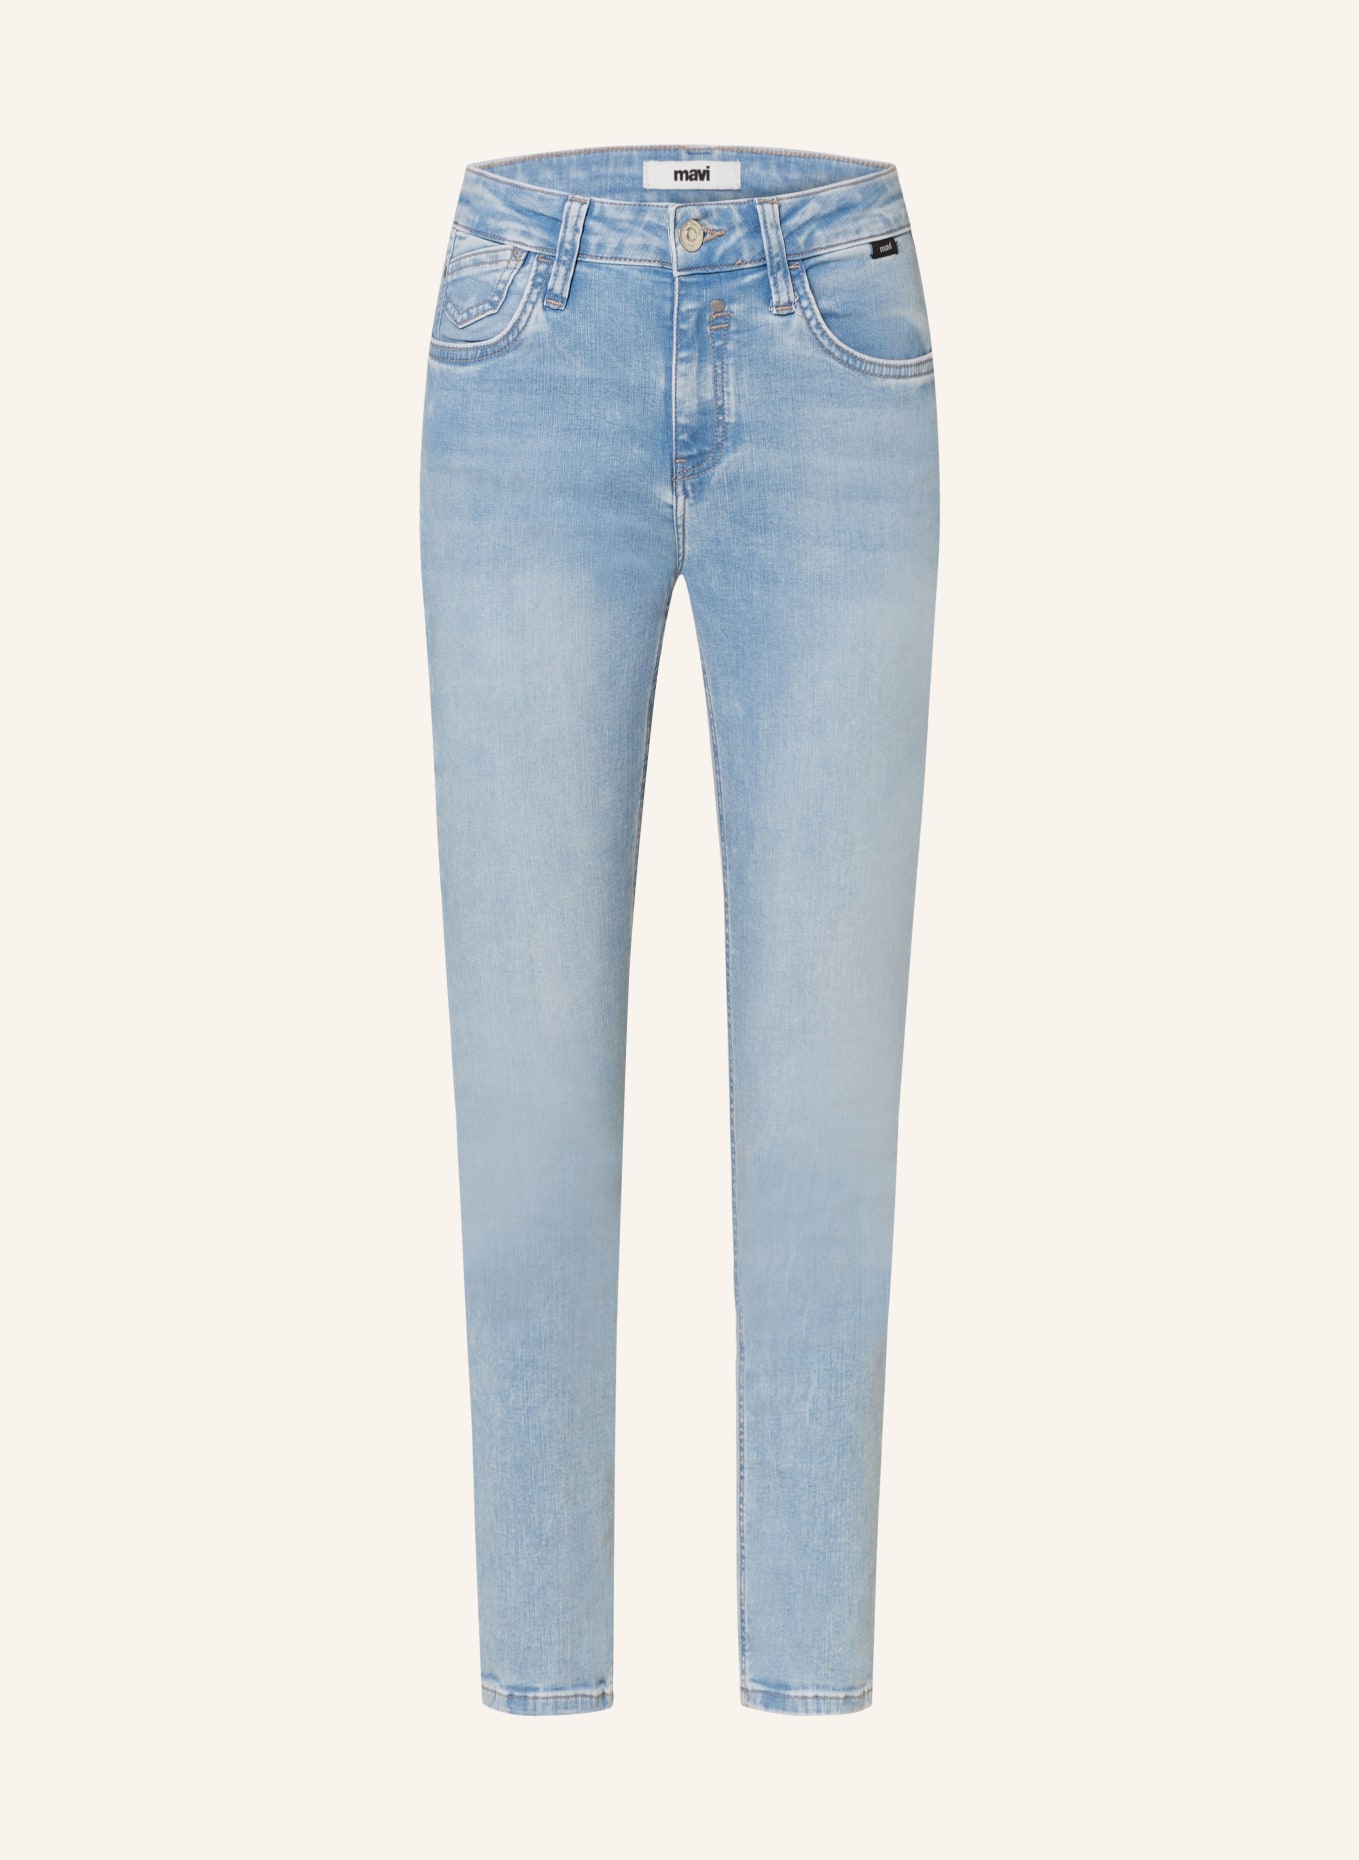 mavi Skinny Jeans SOPHIE, Farbe: 86293 lt str (Bild 1)